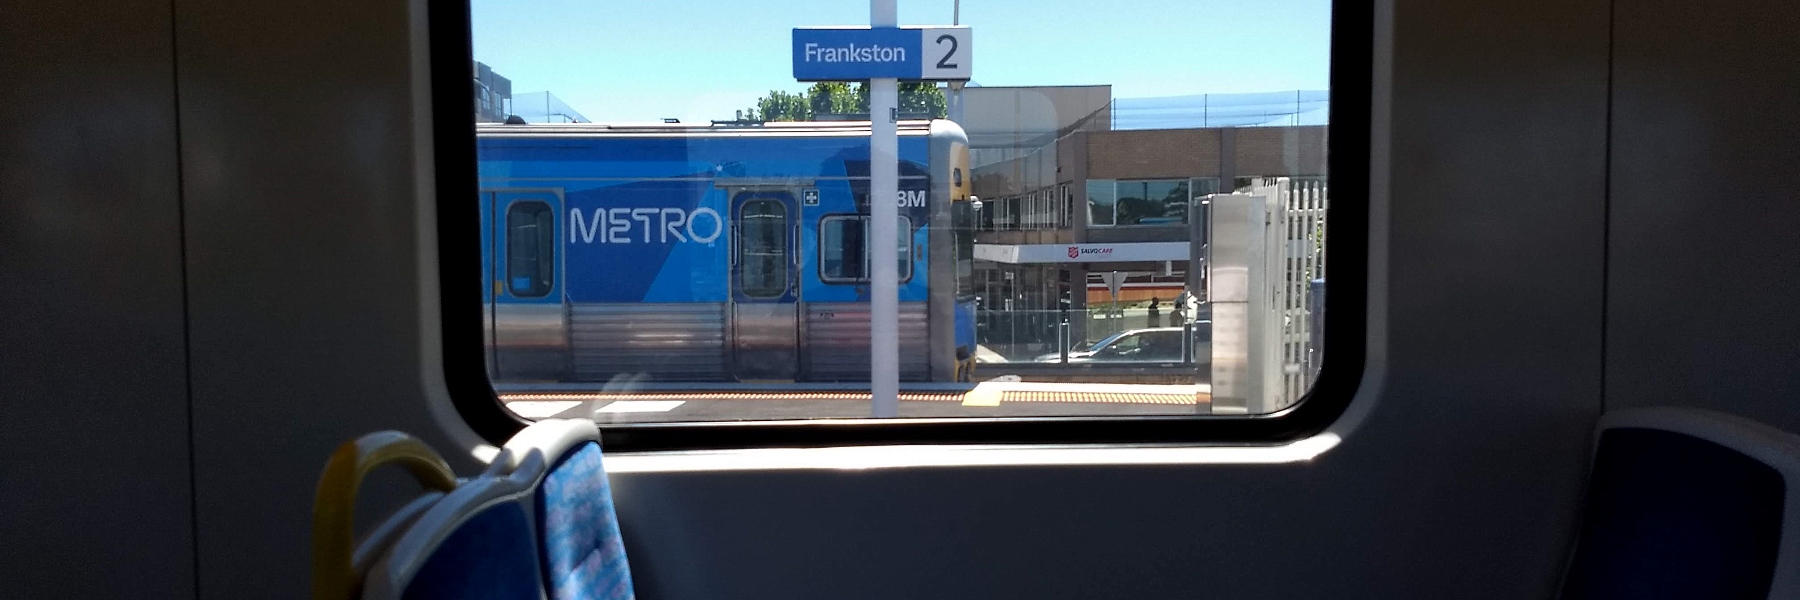 Frankston station